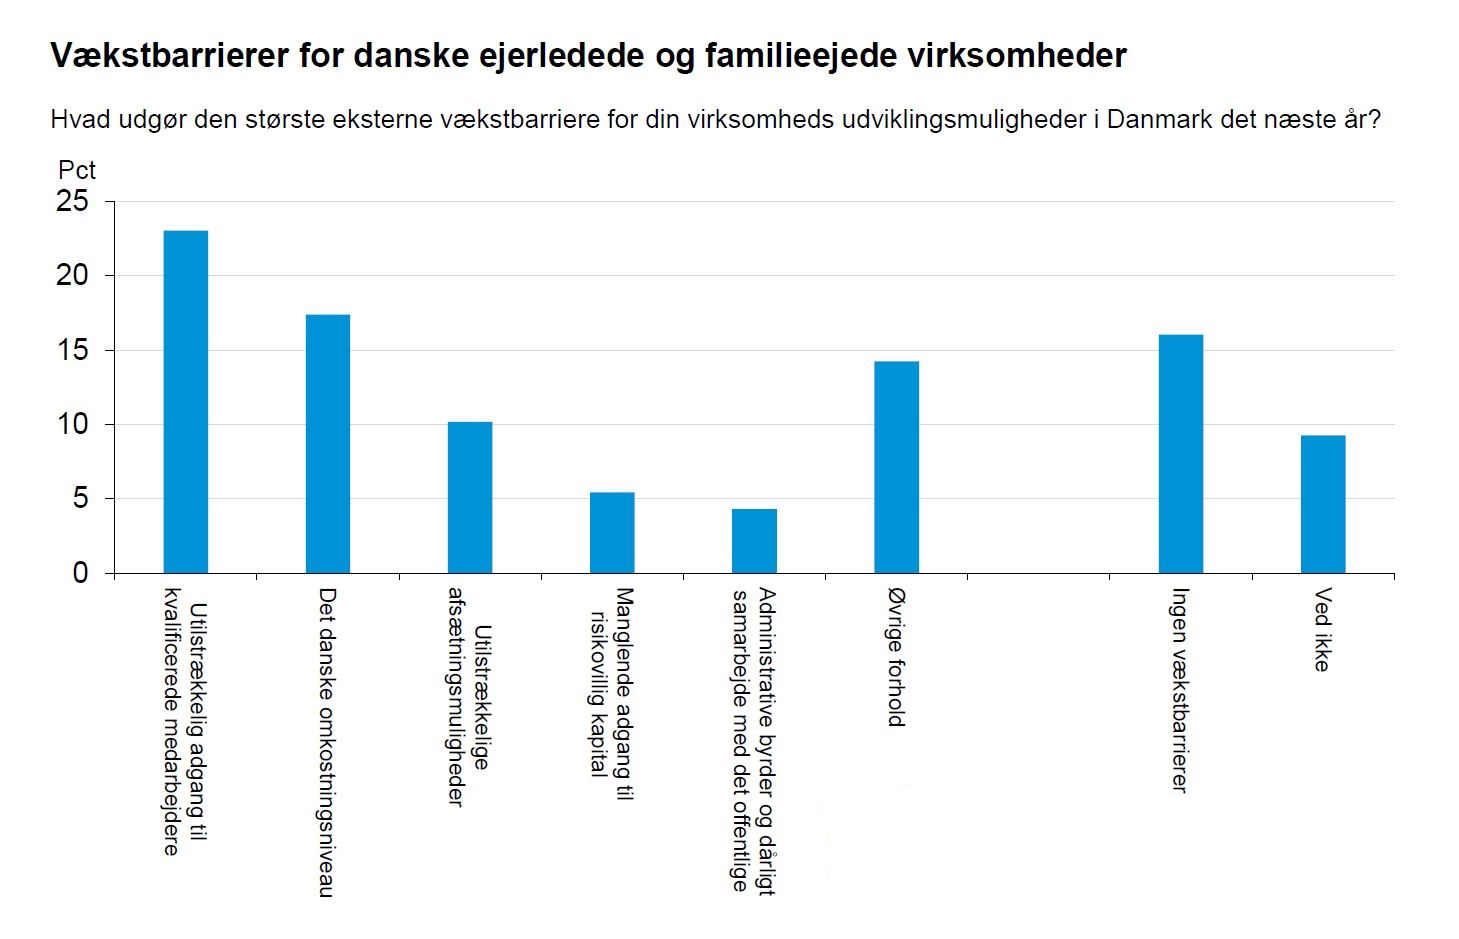 Vækstbarrierer for danske ejerledede og familieejede virksomheder